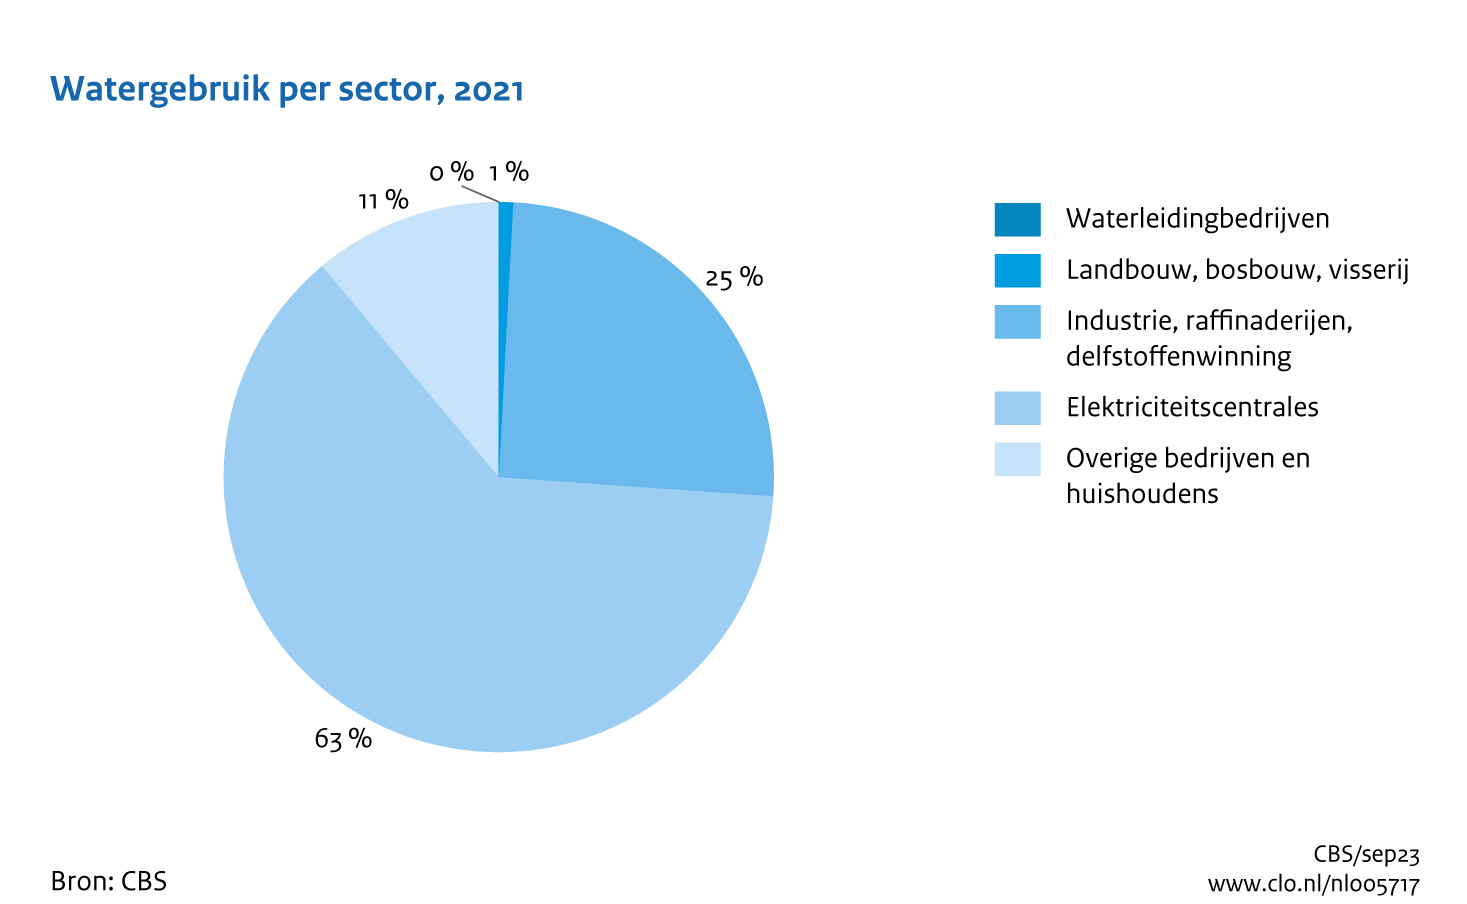 Figuur Watergebruik sectoren 2021. In de rest van de tekst wordt deze figuur uitgebreider uitgelegd.